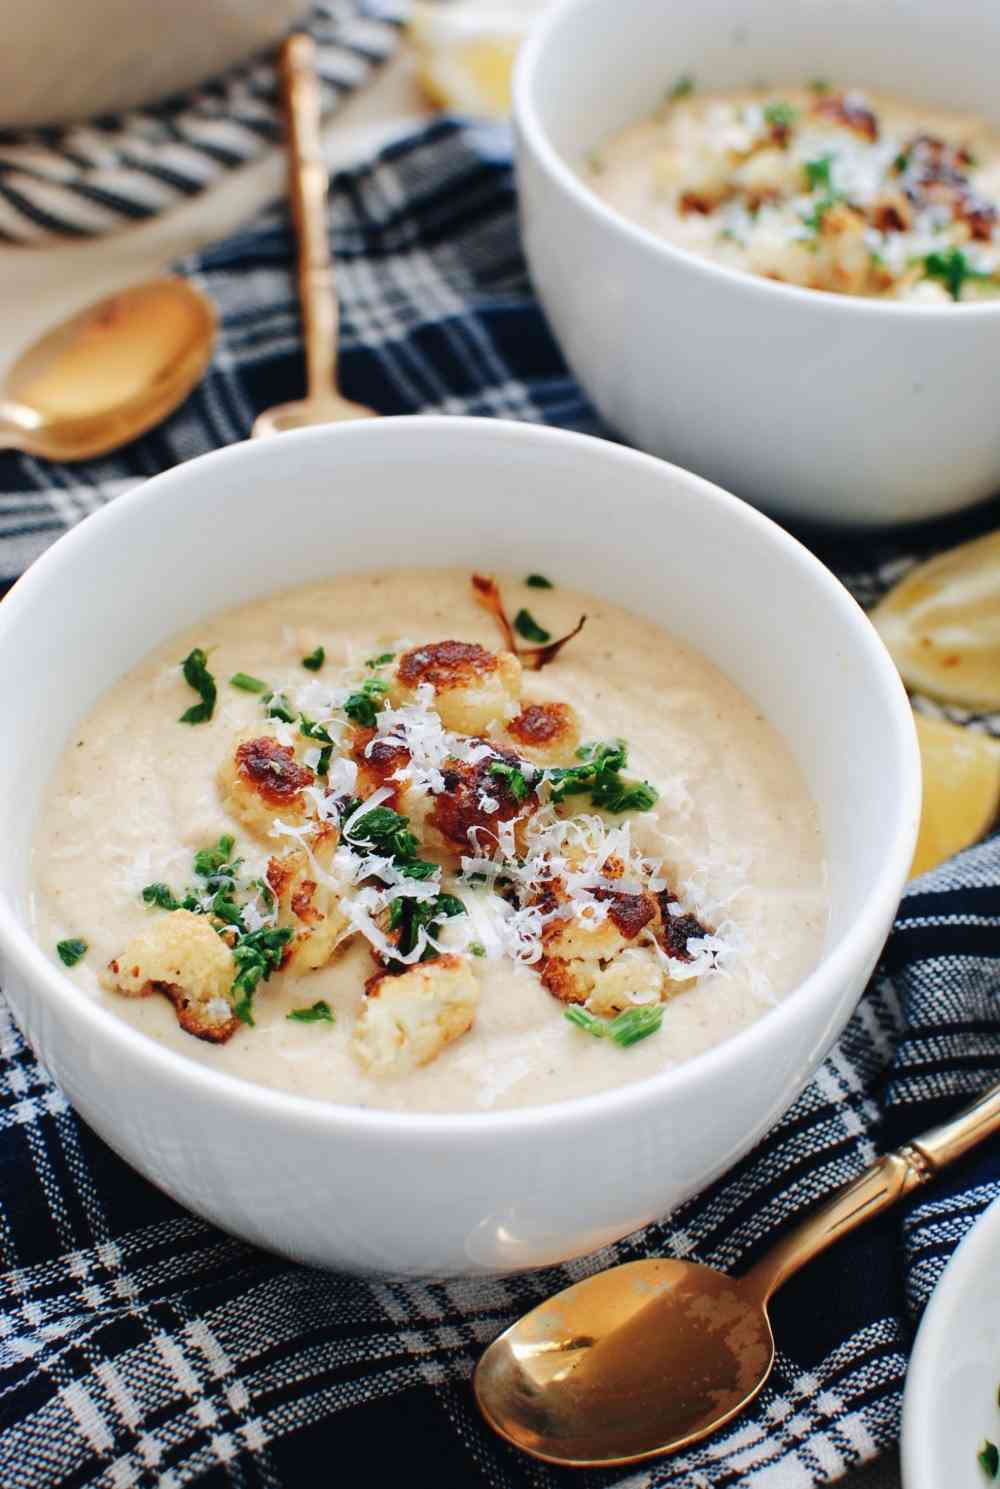 gerösteter blumenkohl als beilage für schnelle suppe an kalten wintertagen